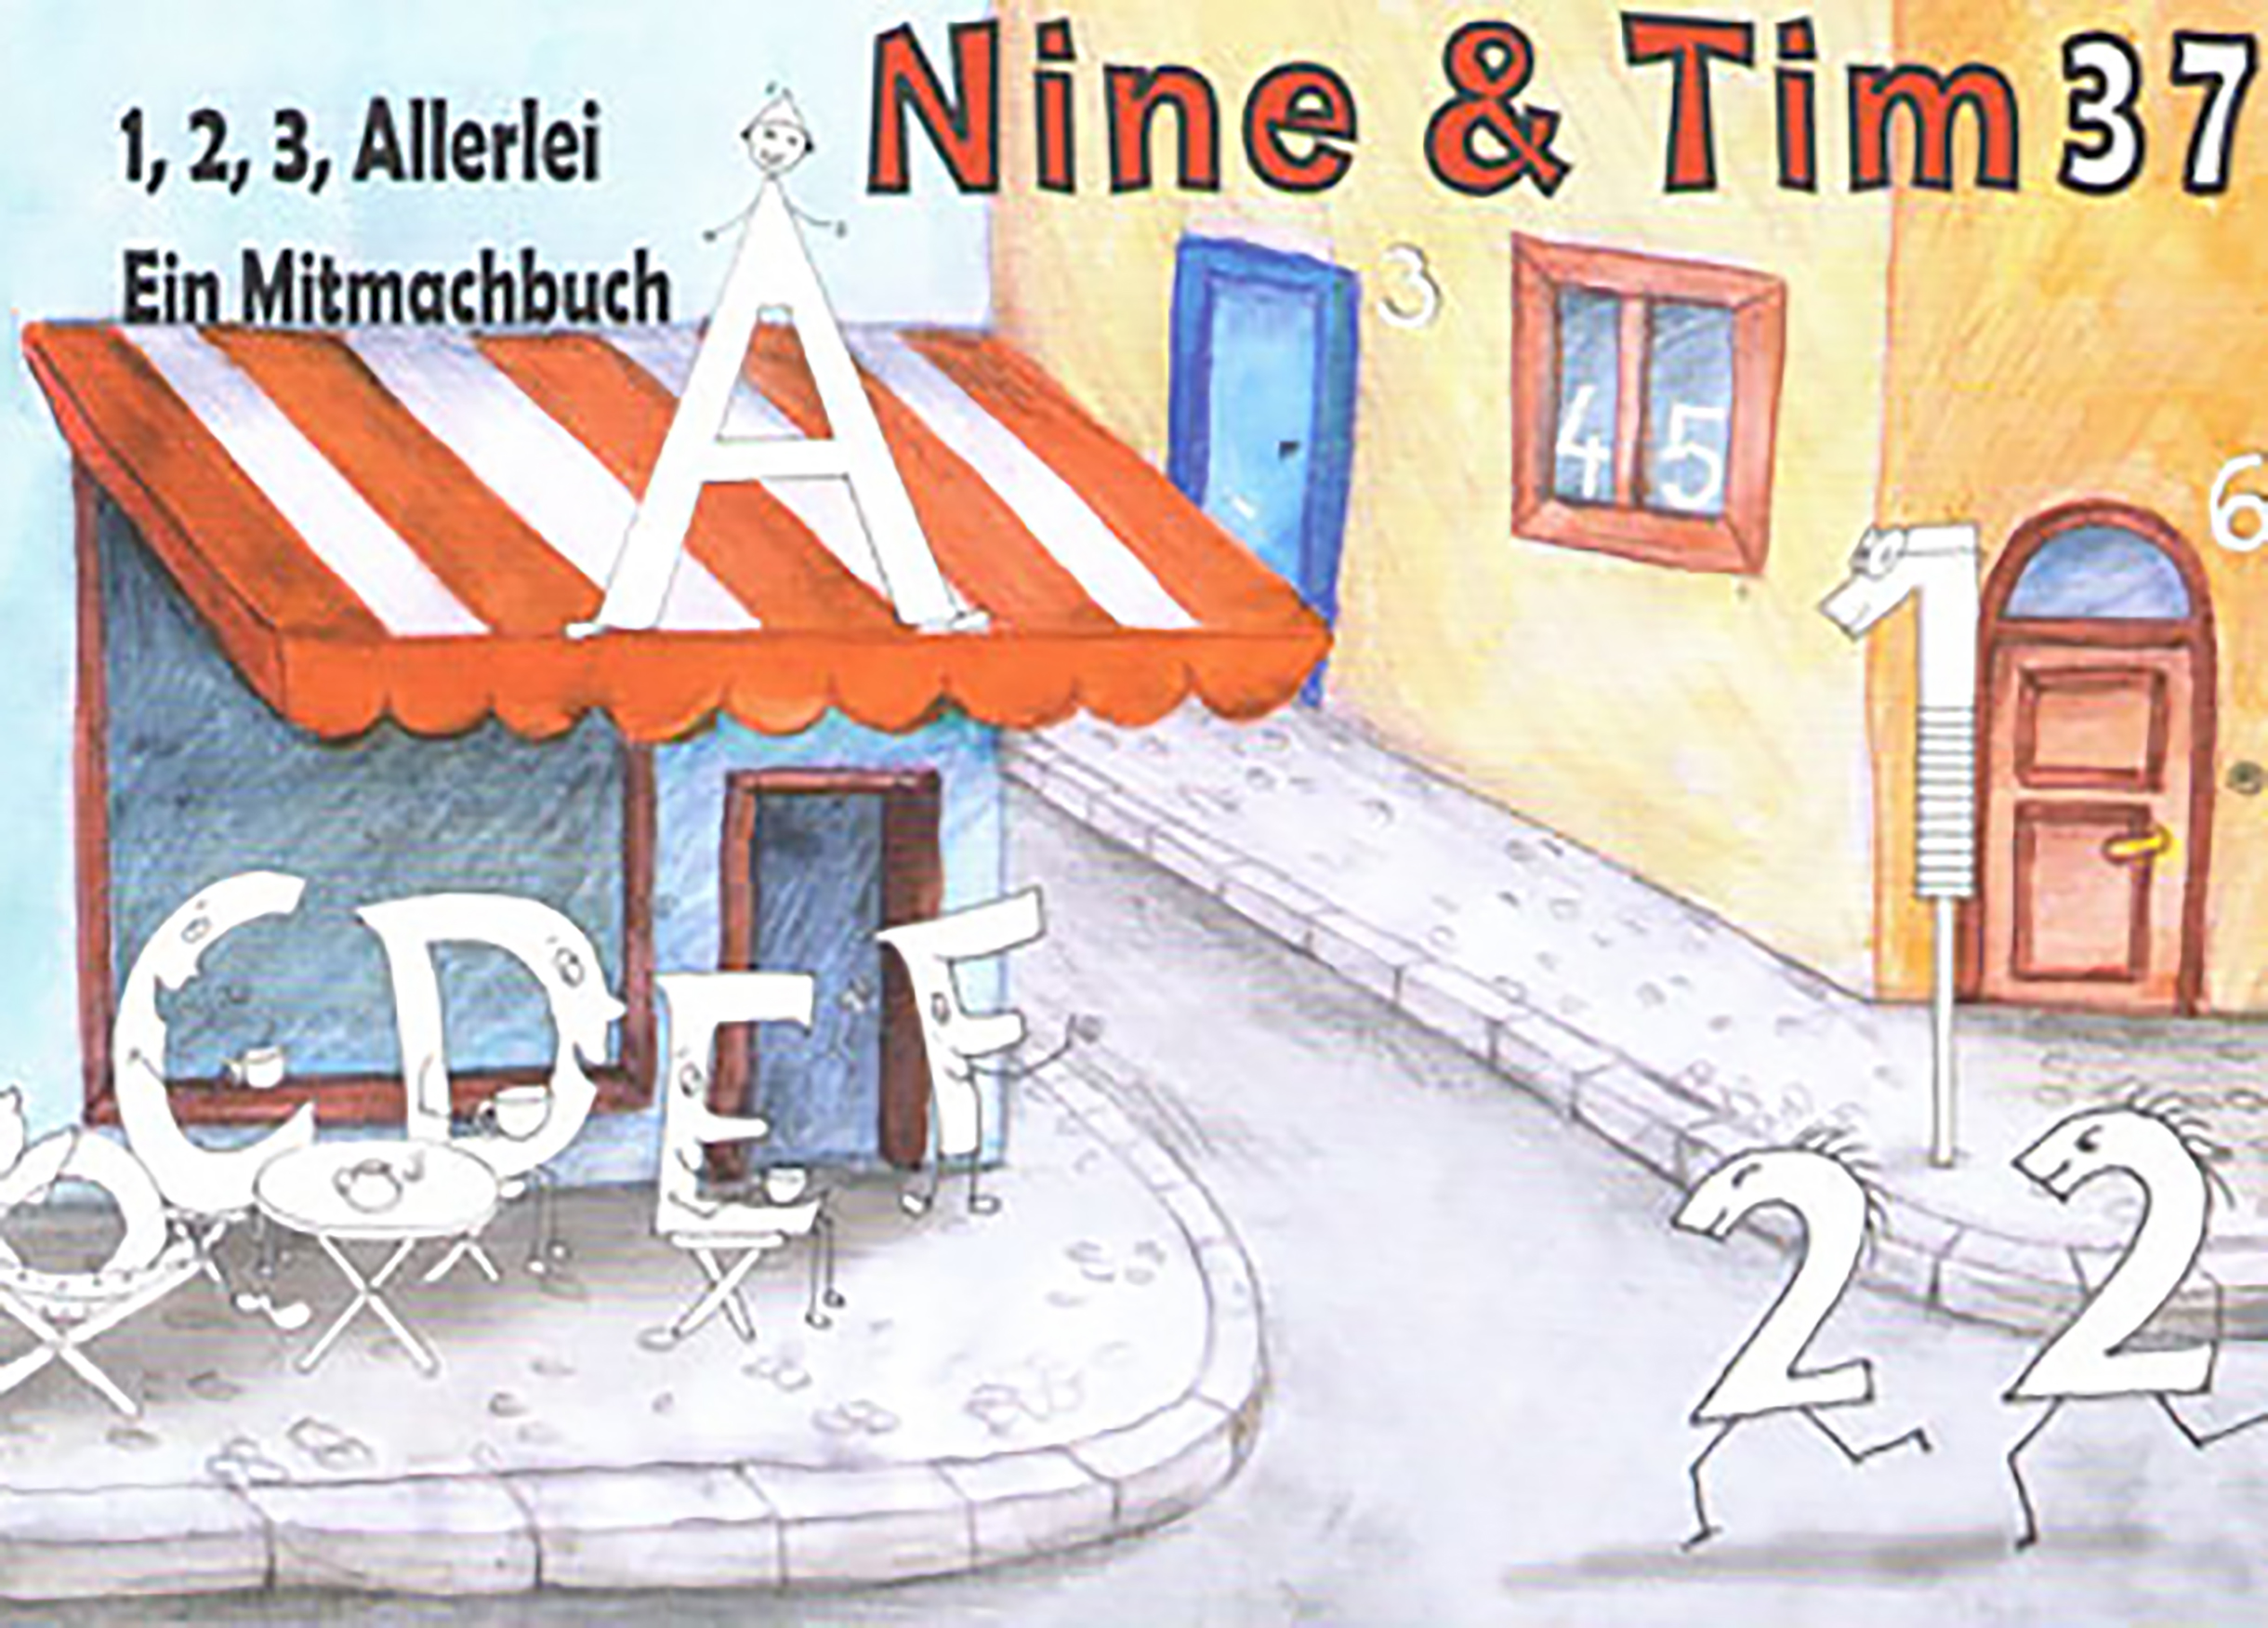 Das Bild zeigt ein Cover der Publikation Nine  Tim Heft 37